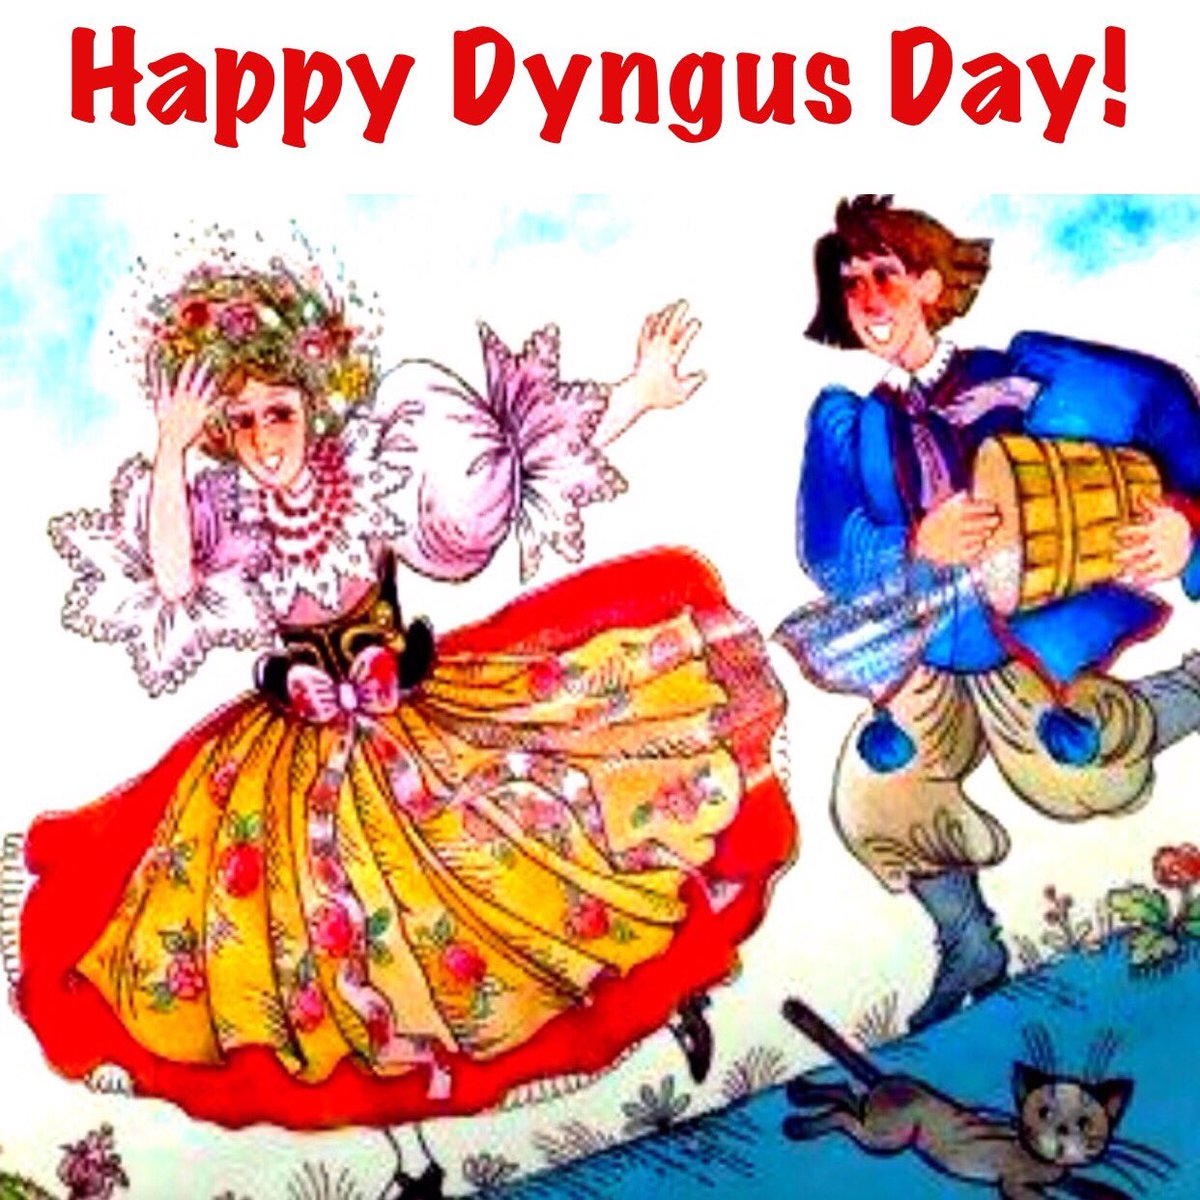 Have a fun and safe Dyngus Day 2017! #DyngusDay #polishdance #BuffaLove #polishfolk #folkdance #polishpride